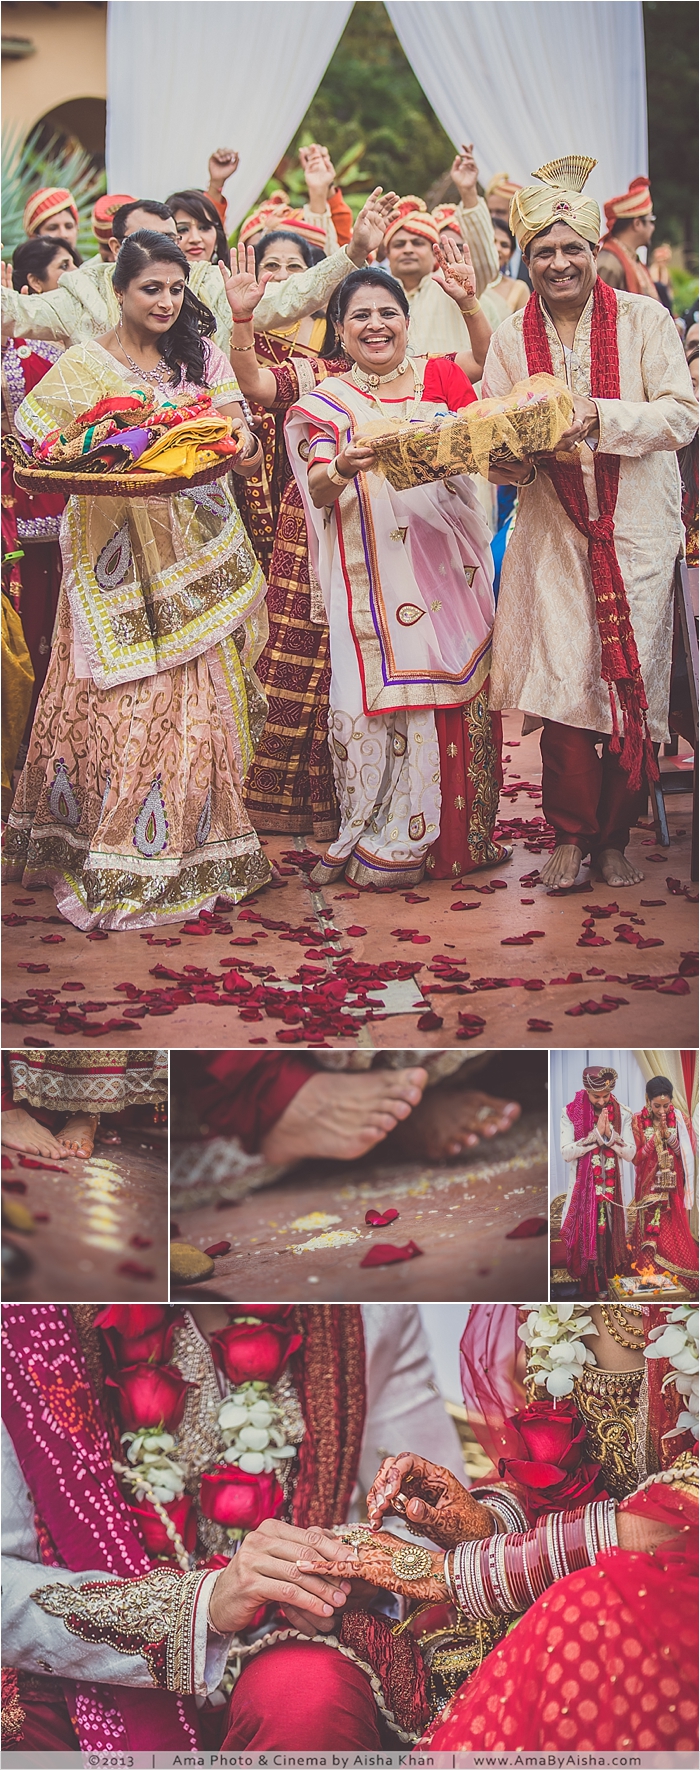 ©2013 | www.AmaByAisha.com | Wedding @AmaByAisha @MaderaEstates